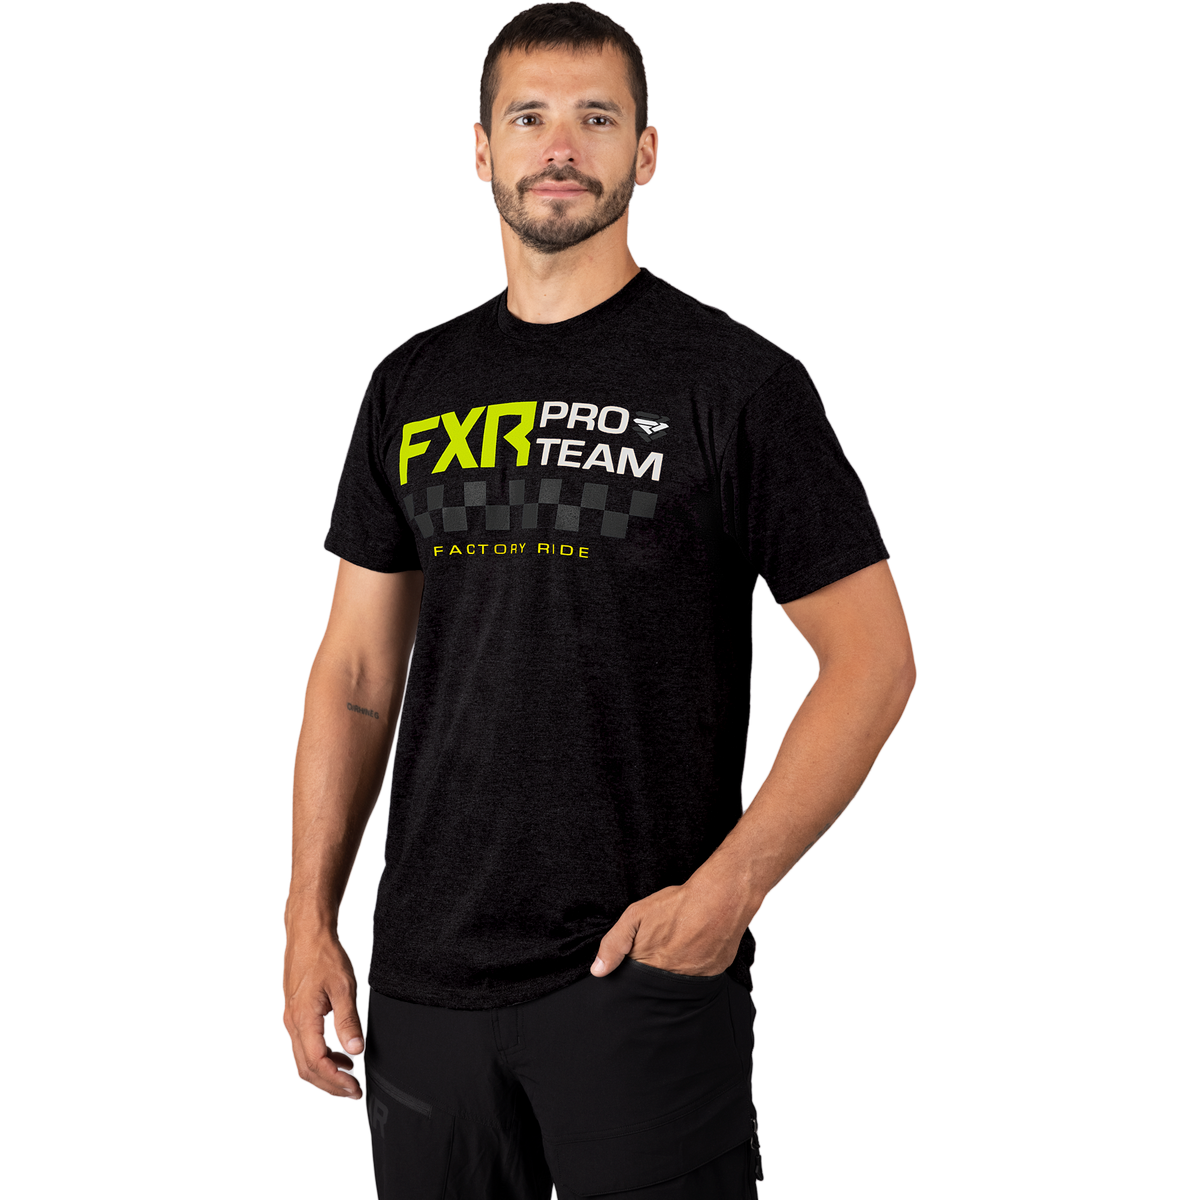 FXR Team Premium T-Shirt